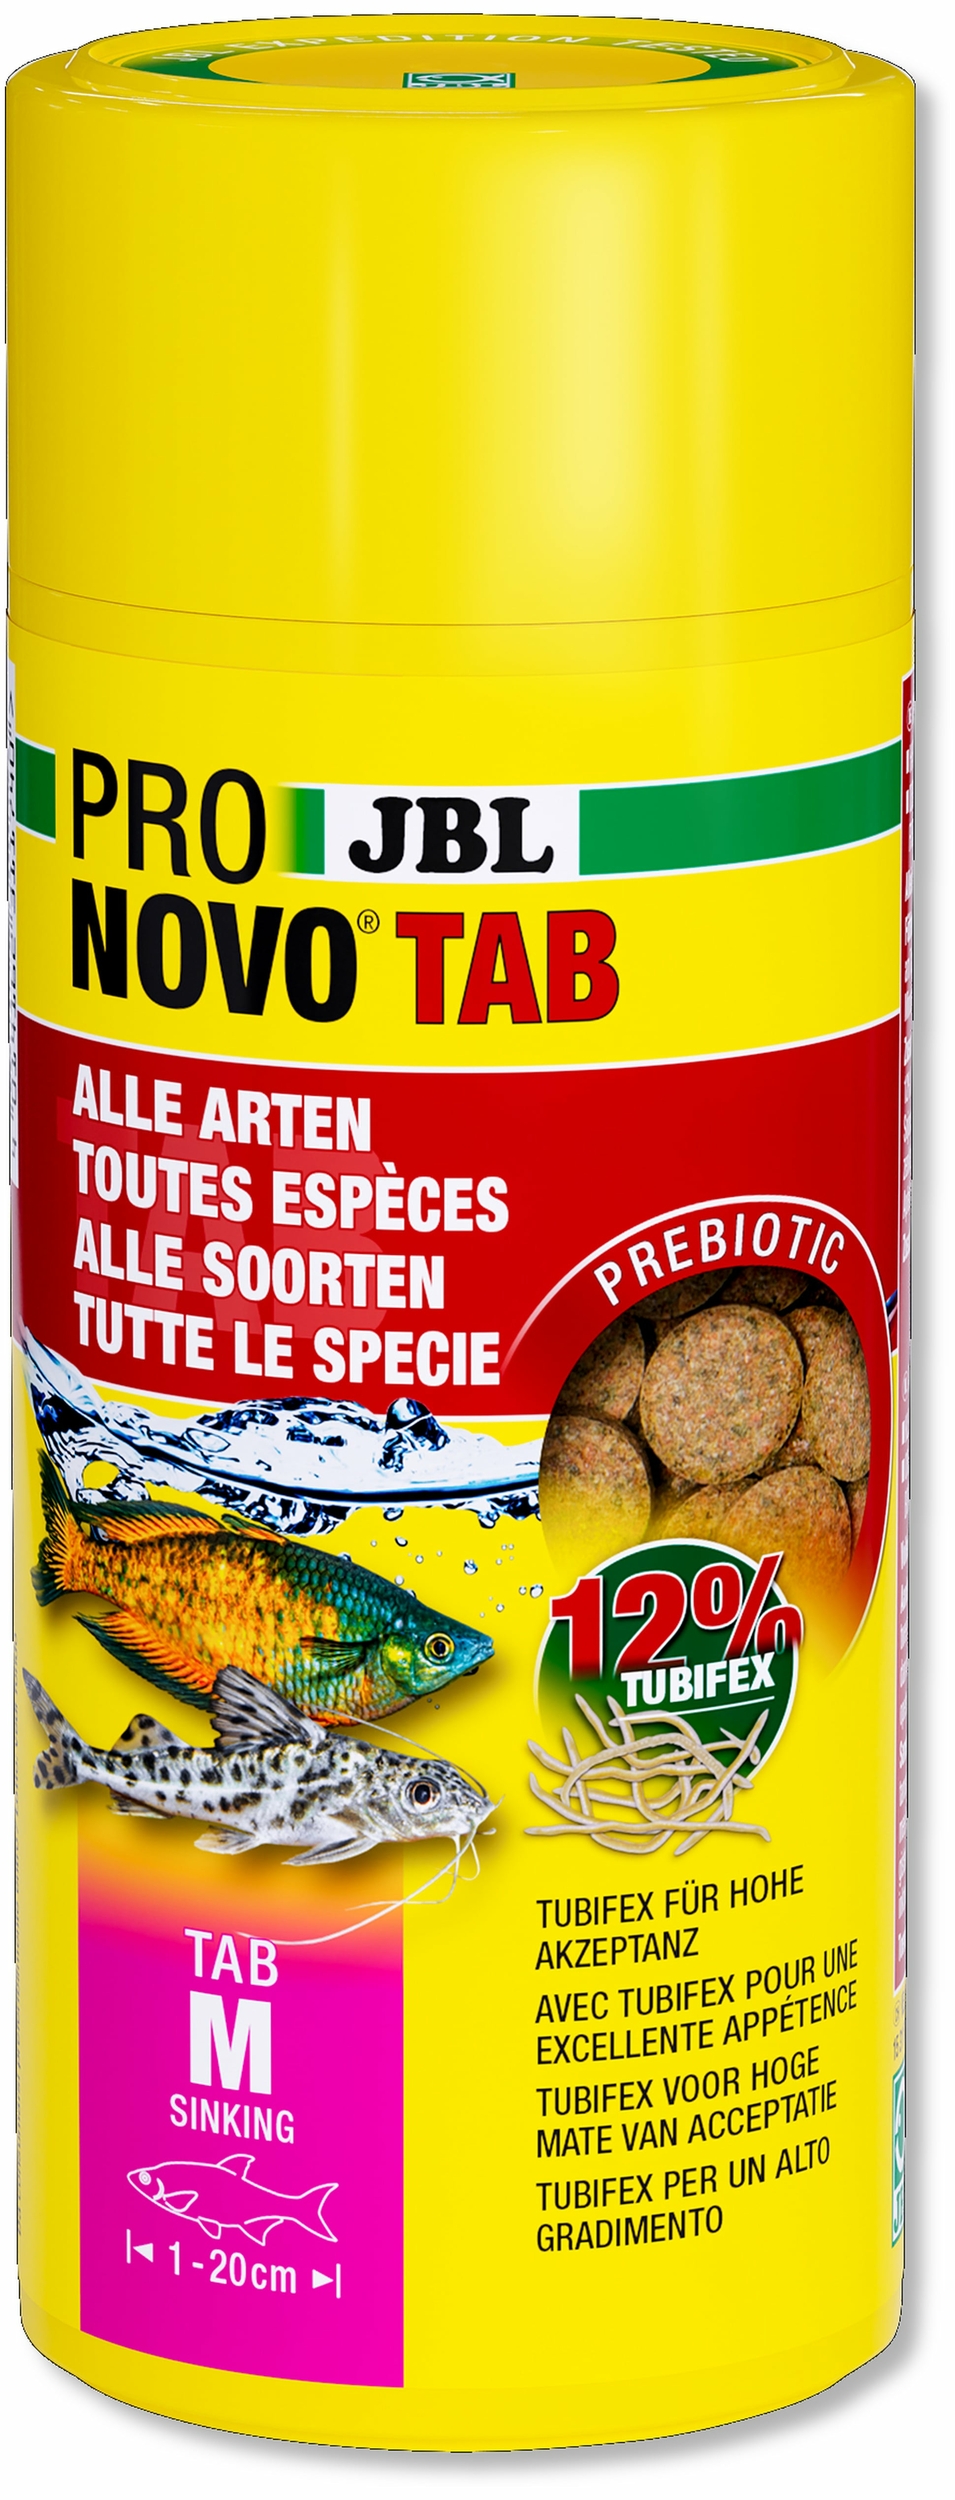 jbl-pronovo-tab-m-250-ml-nourriture-en-tablettes-pour-tous-poissons-d-aquarium-de-1-a-20-cm-min